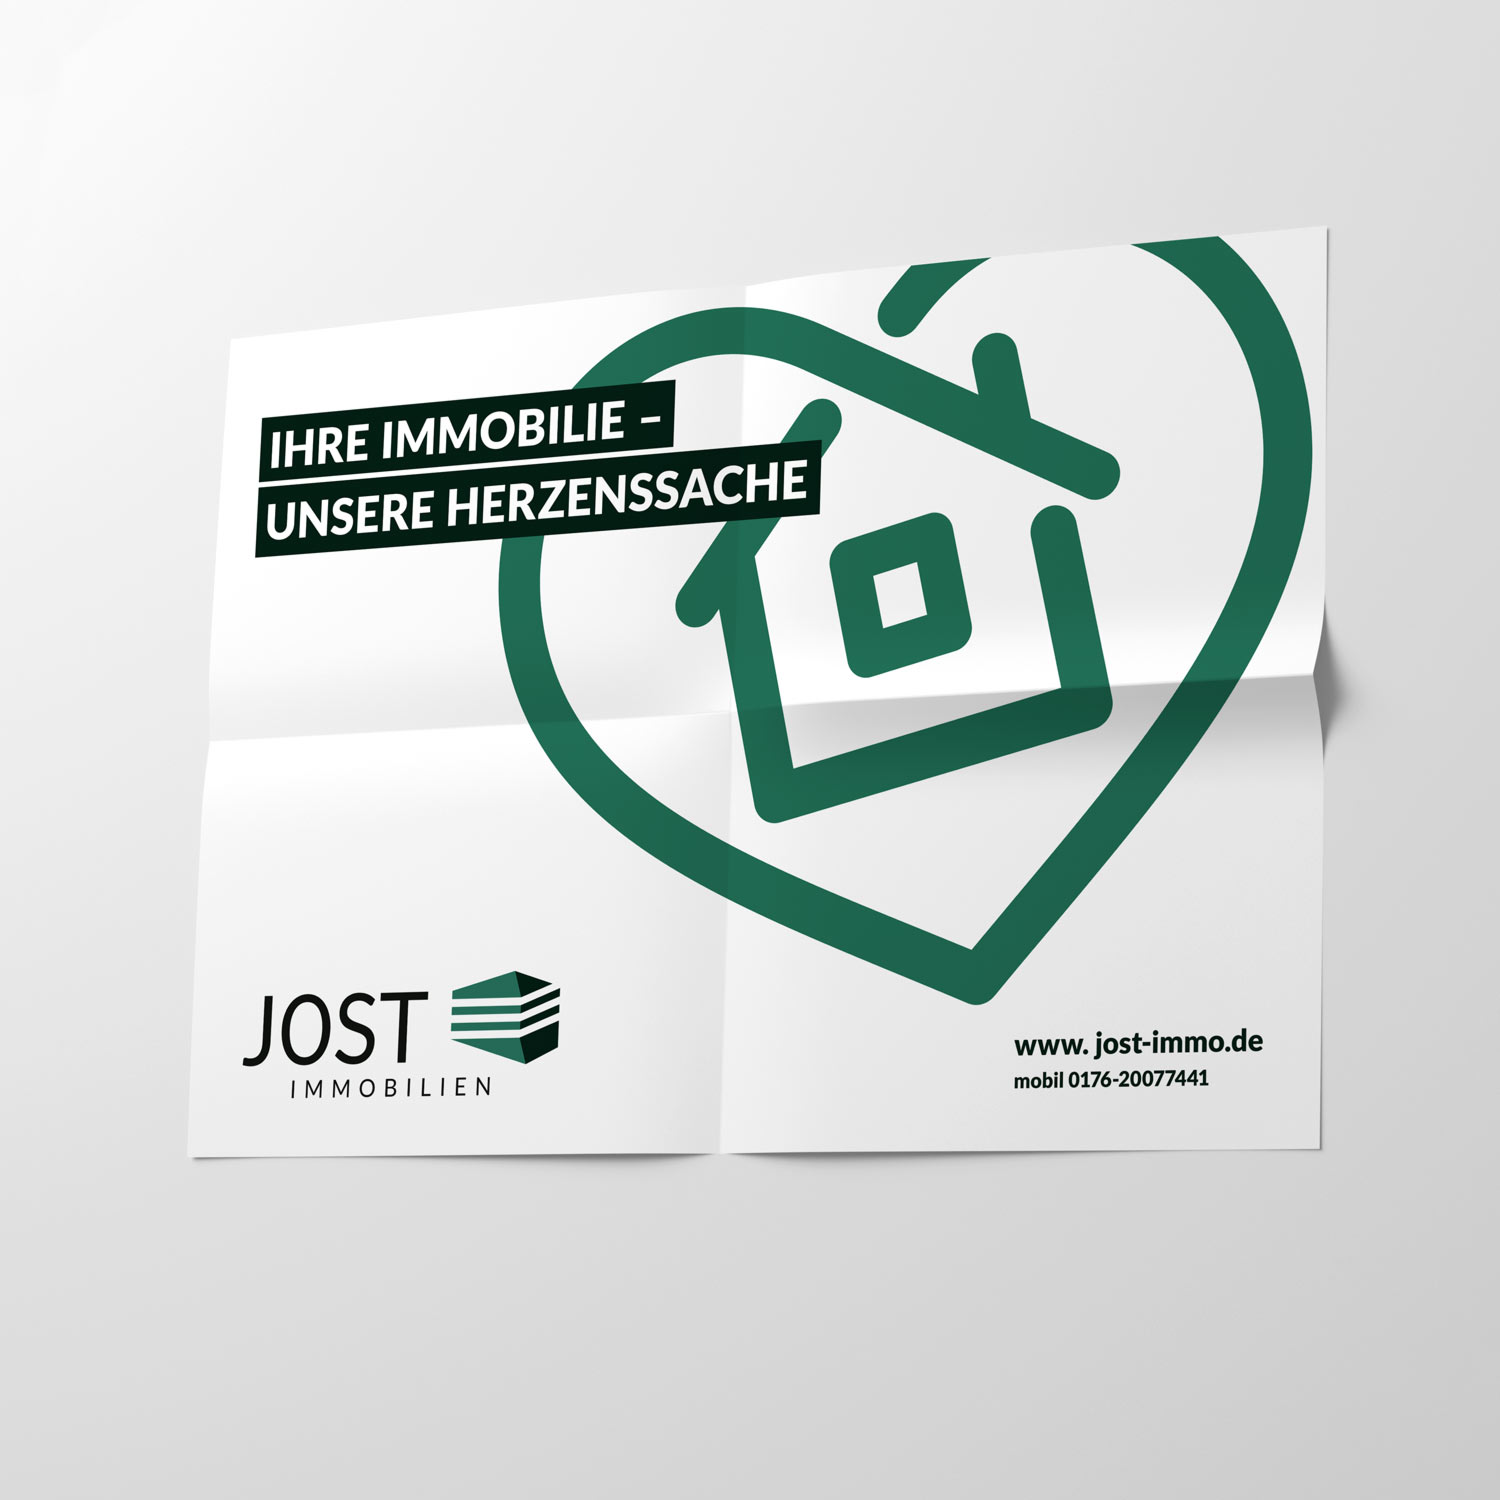 Plakat von Jost mit Aufschrift "Ihre Immobilie - unserer Herzenssache" und grünem Herz mit Haus-Illustration und Jost Logo